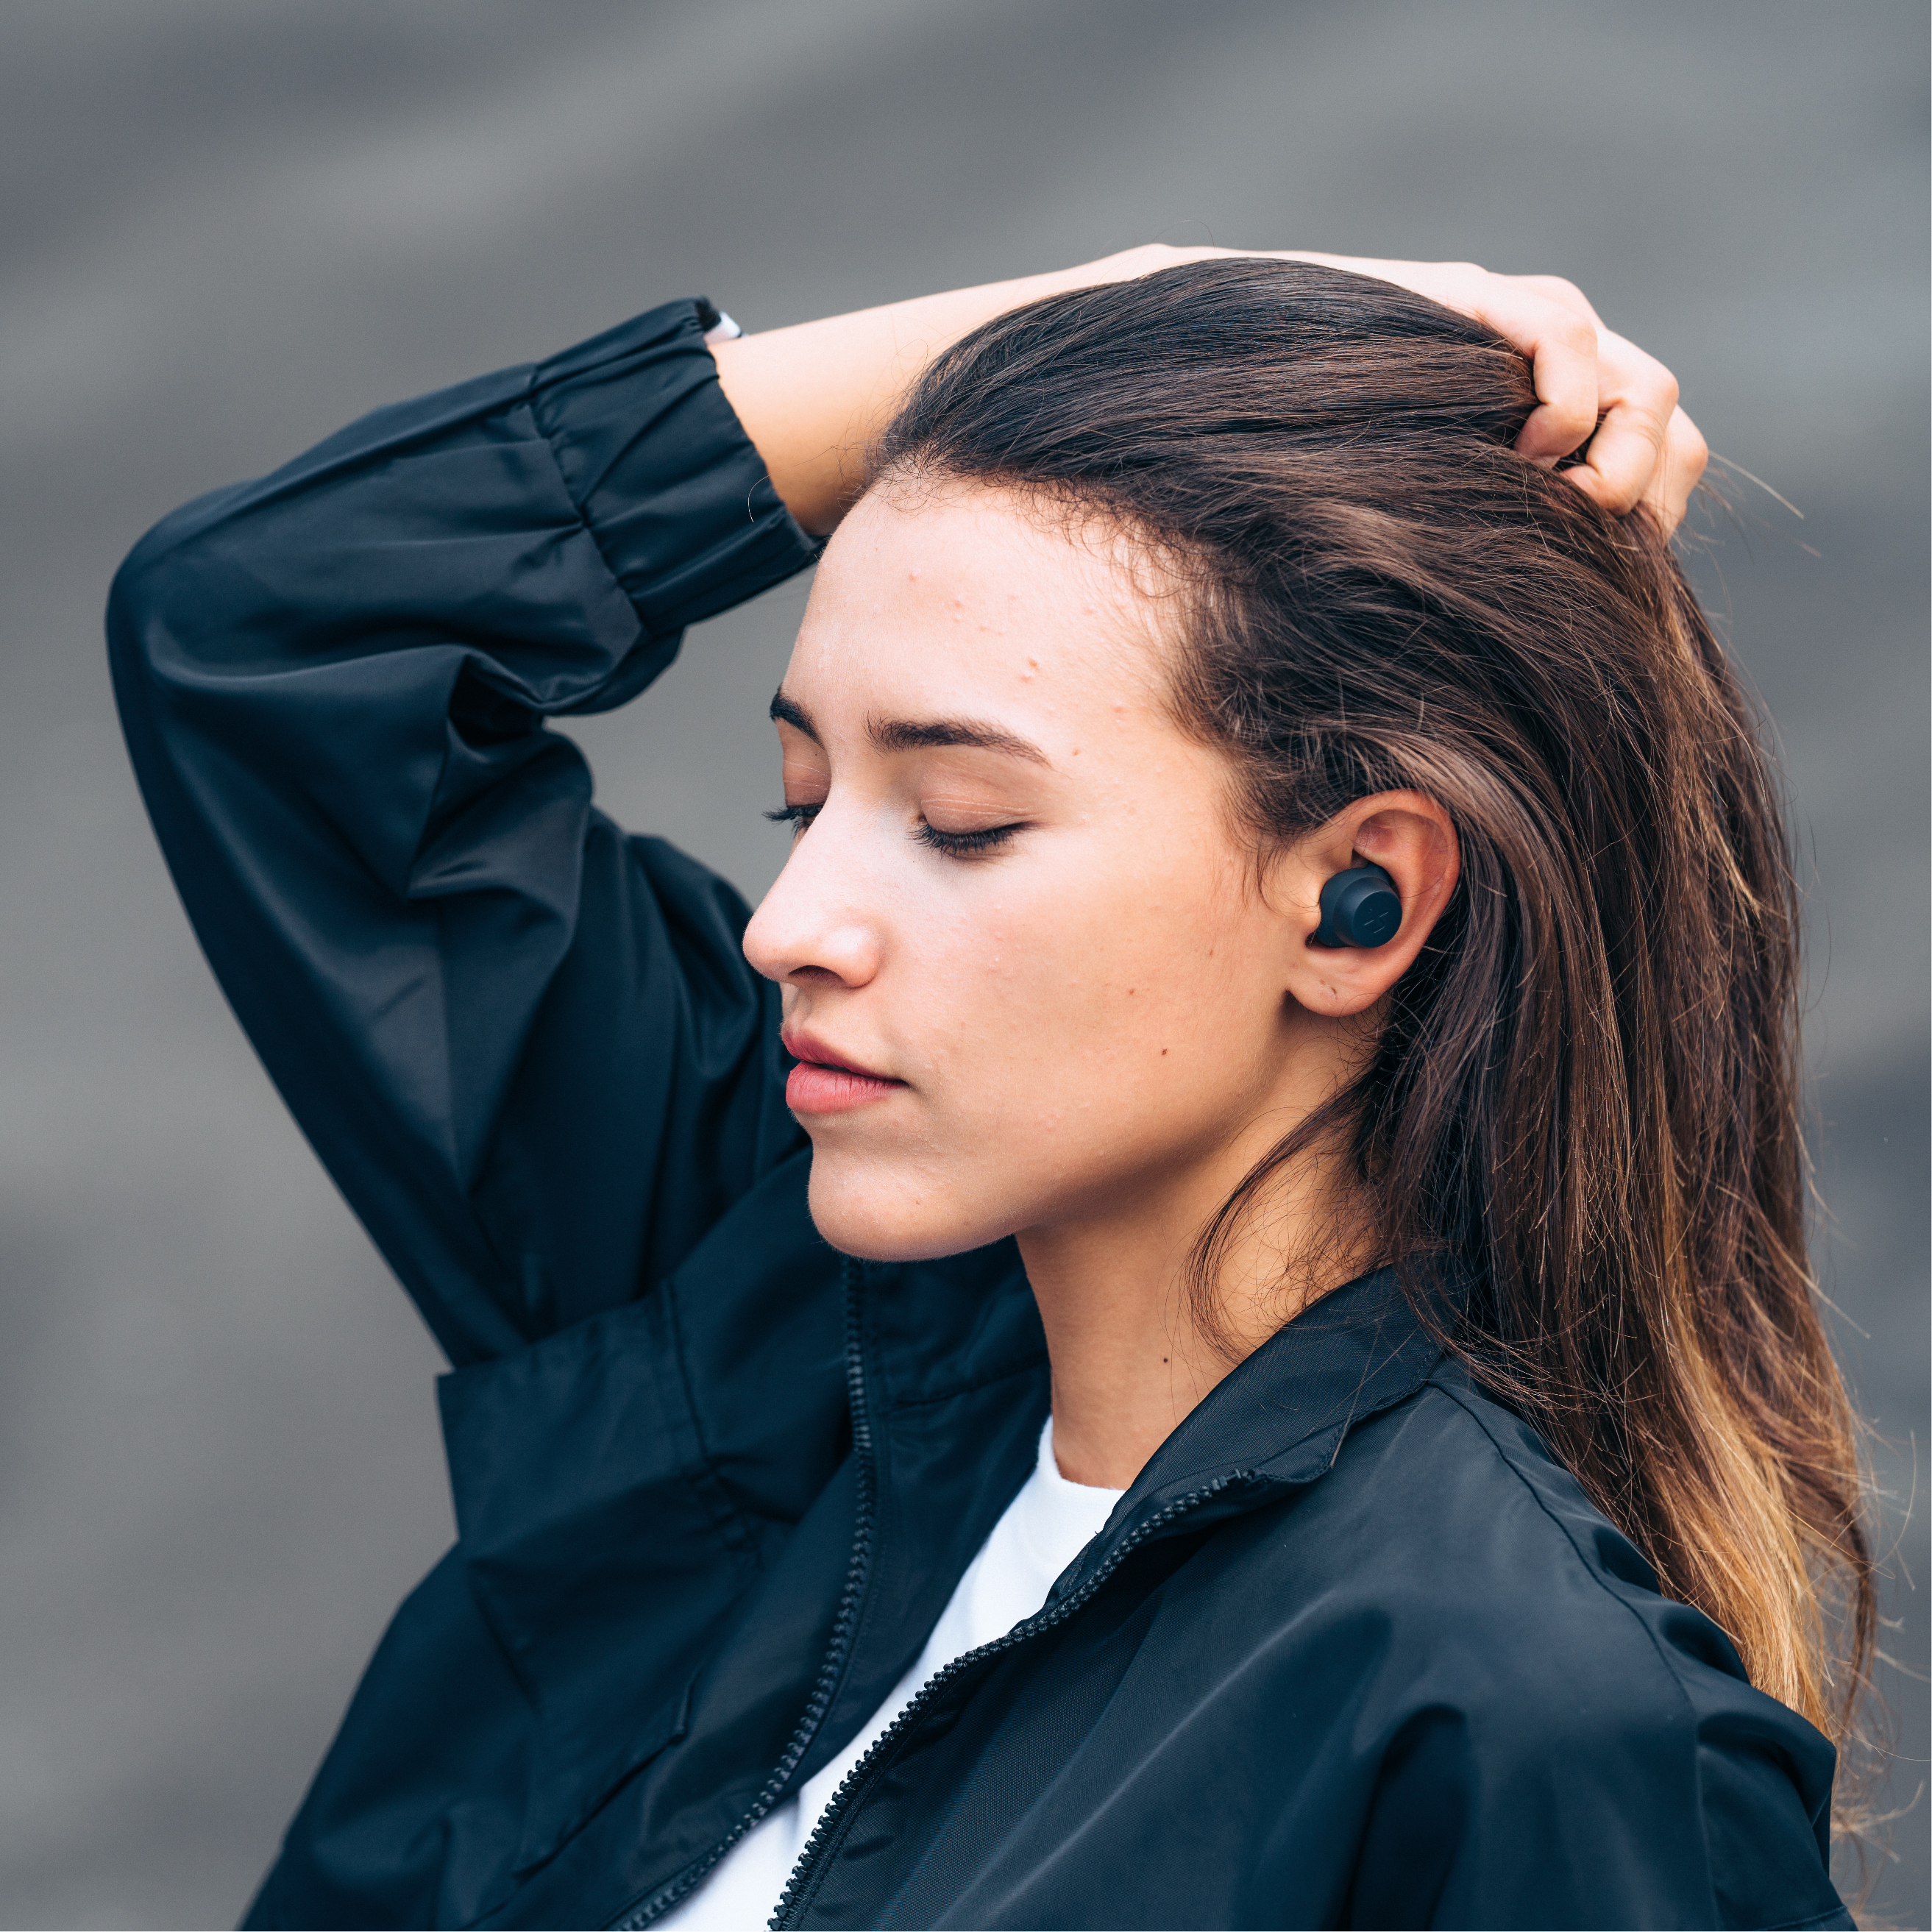 Jlab Flex Sport运动健身耳机｜在听音乐的同时营造出运动空间感 - 普象网